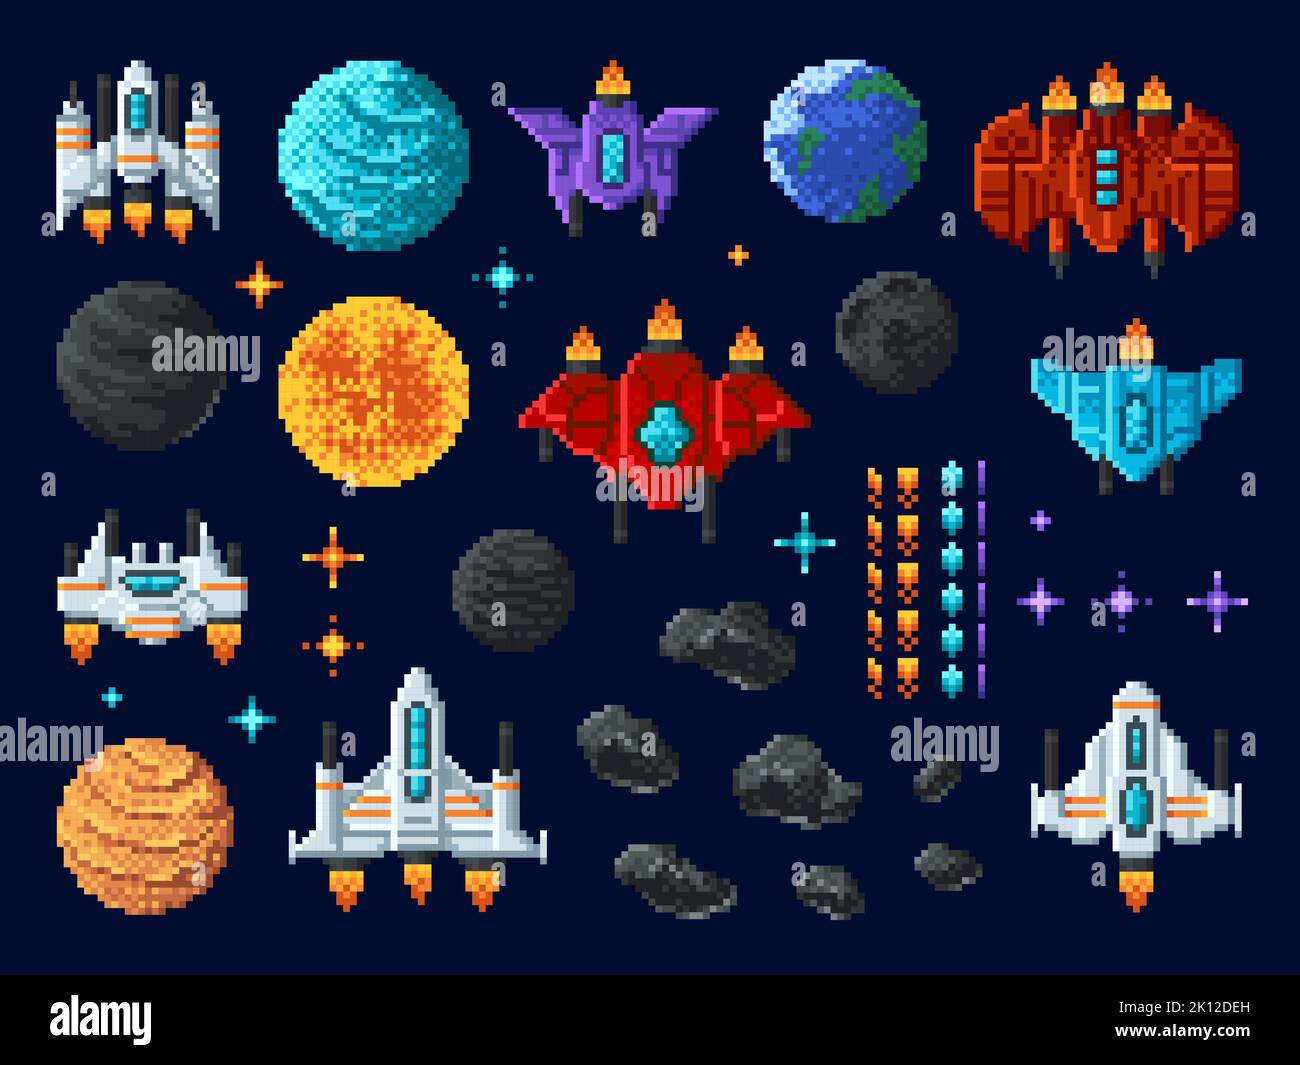 asteroids arcade vector